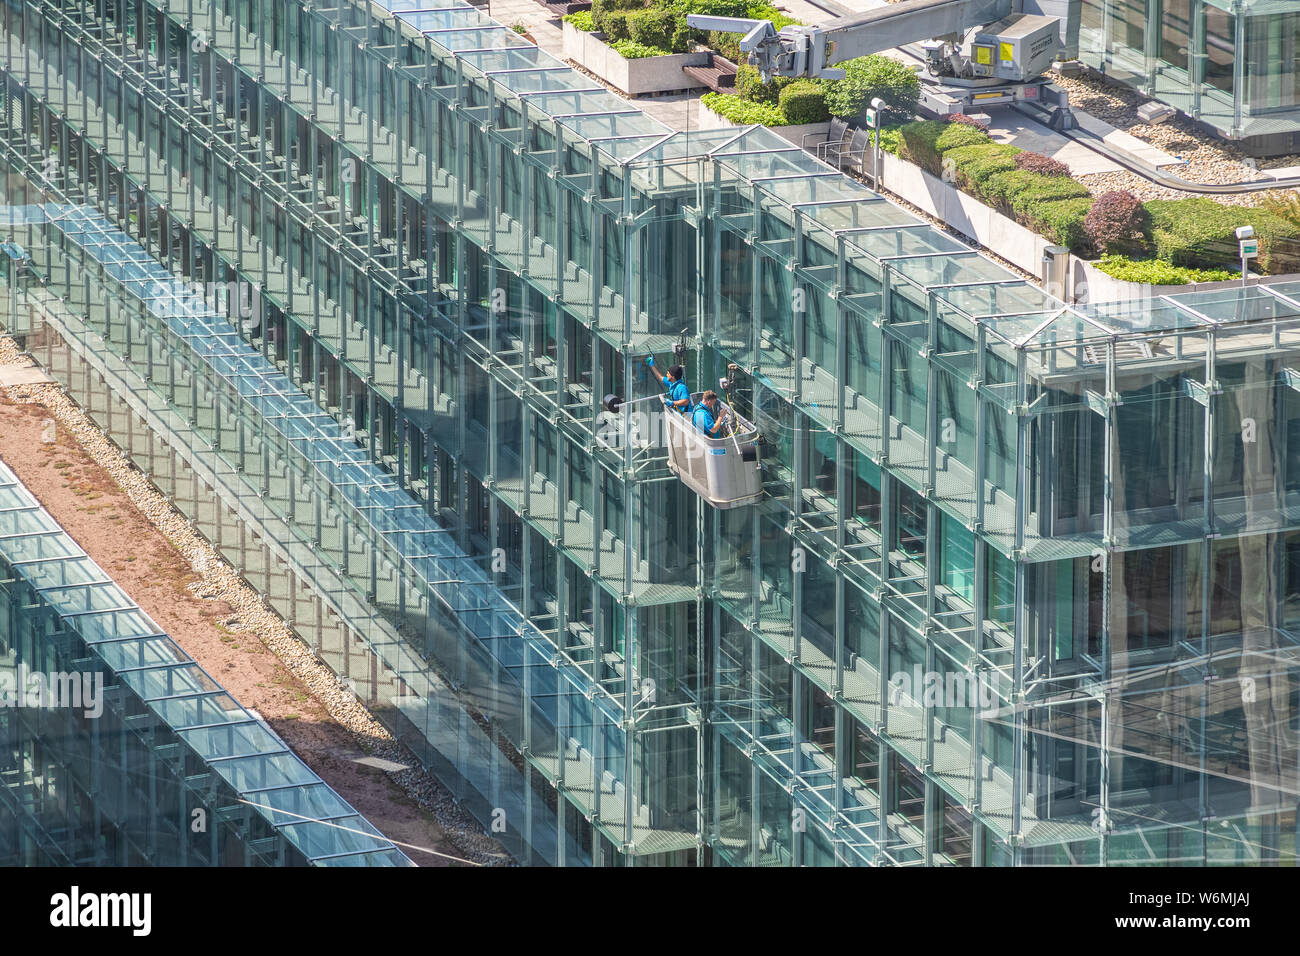 Londres, Royaume-Uni - 16 juillet 2019 - nettoyage de vitres lavage de la façade en verre de grande hauteur Plantation Place dans la ville de Londres Banque D'Images